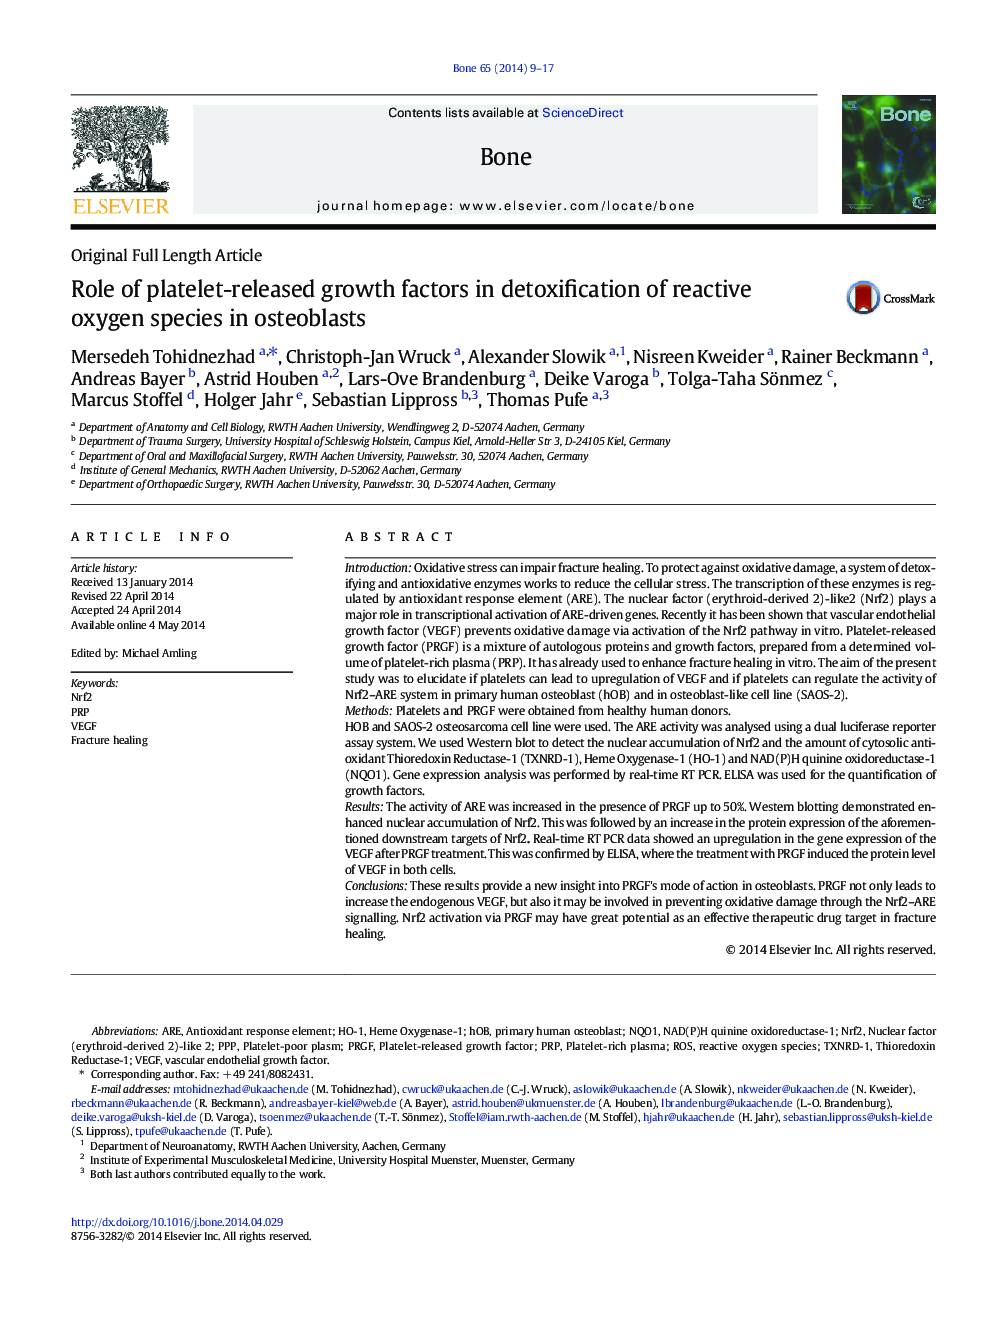 نقش عوامل رشد آزاد پلاکتی در سم زدایی از گونه های اکسیژن واکنشی در استئوبلاست ها 